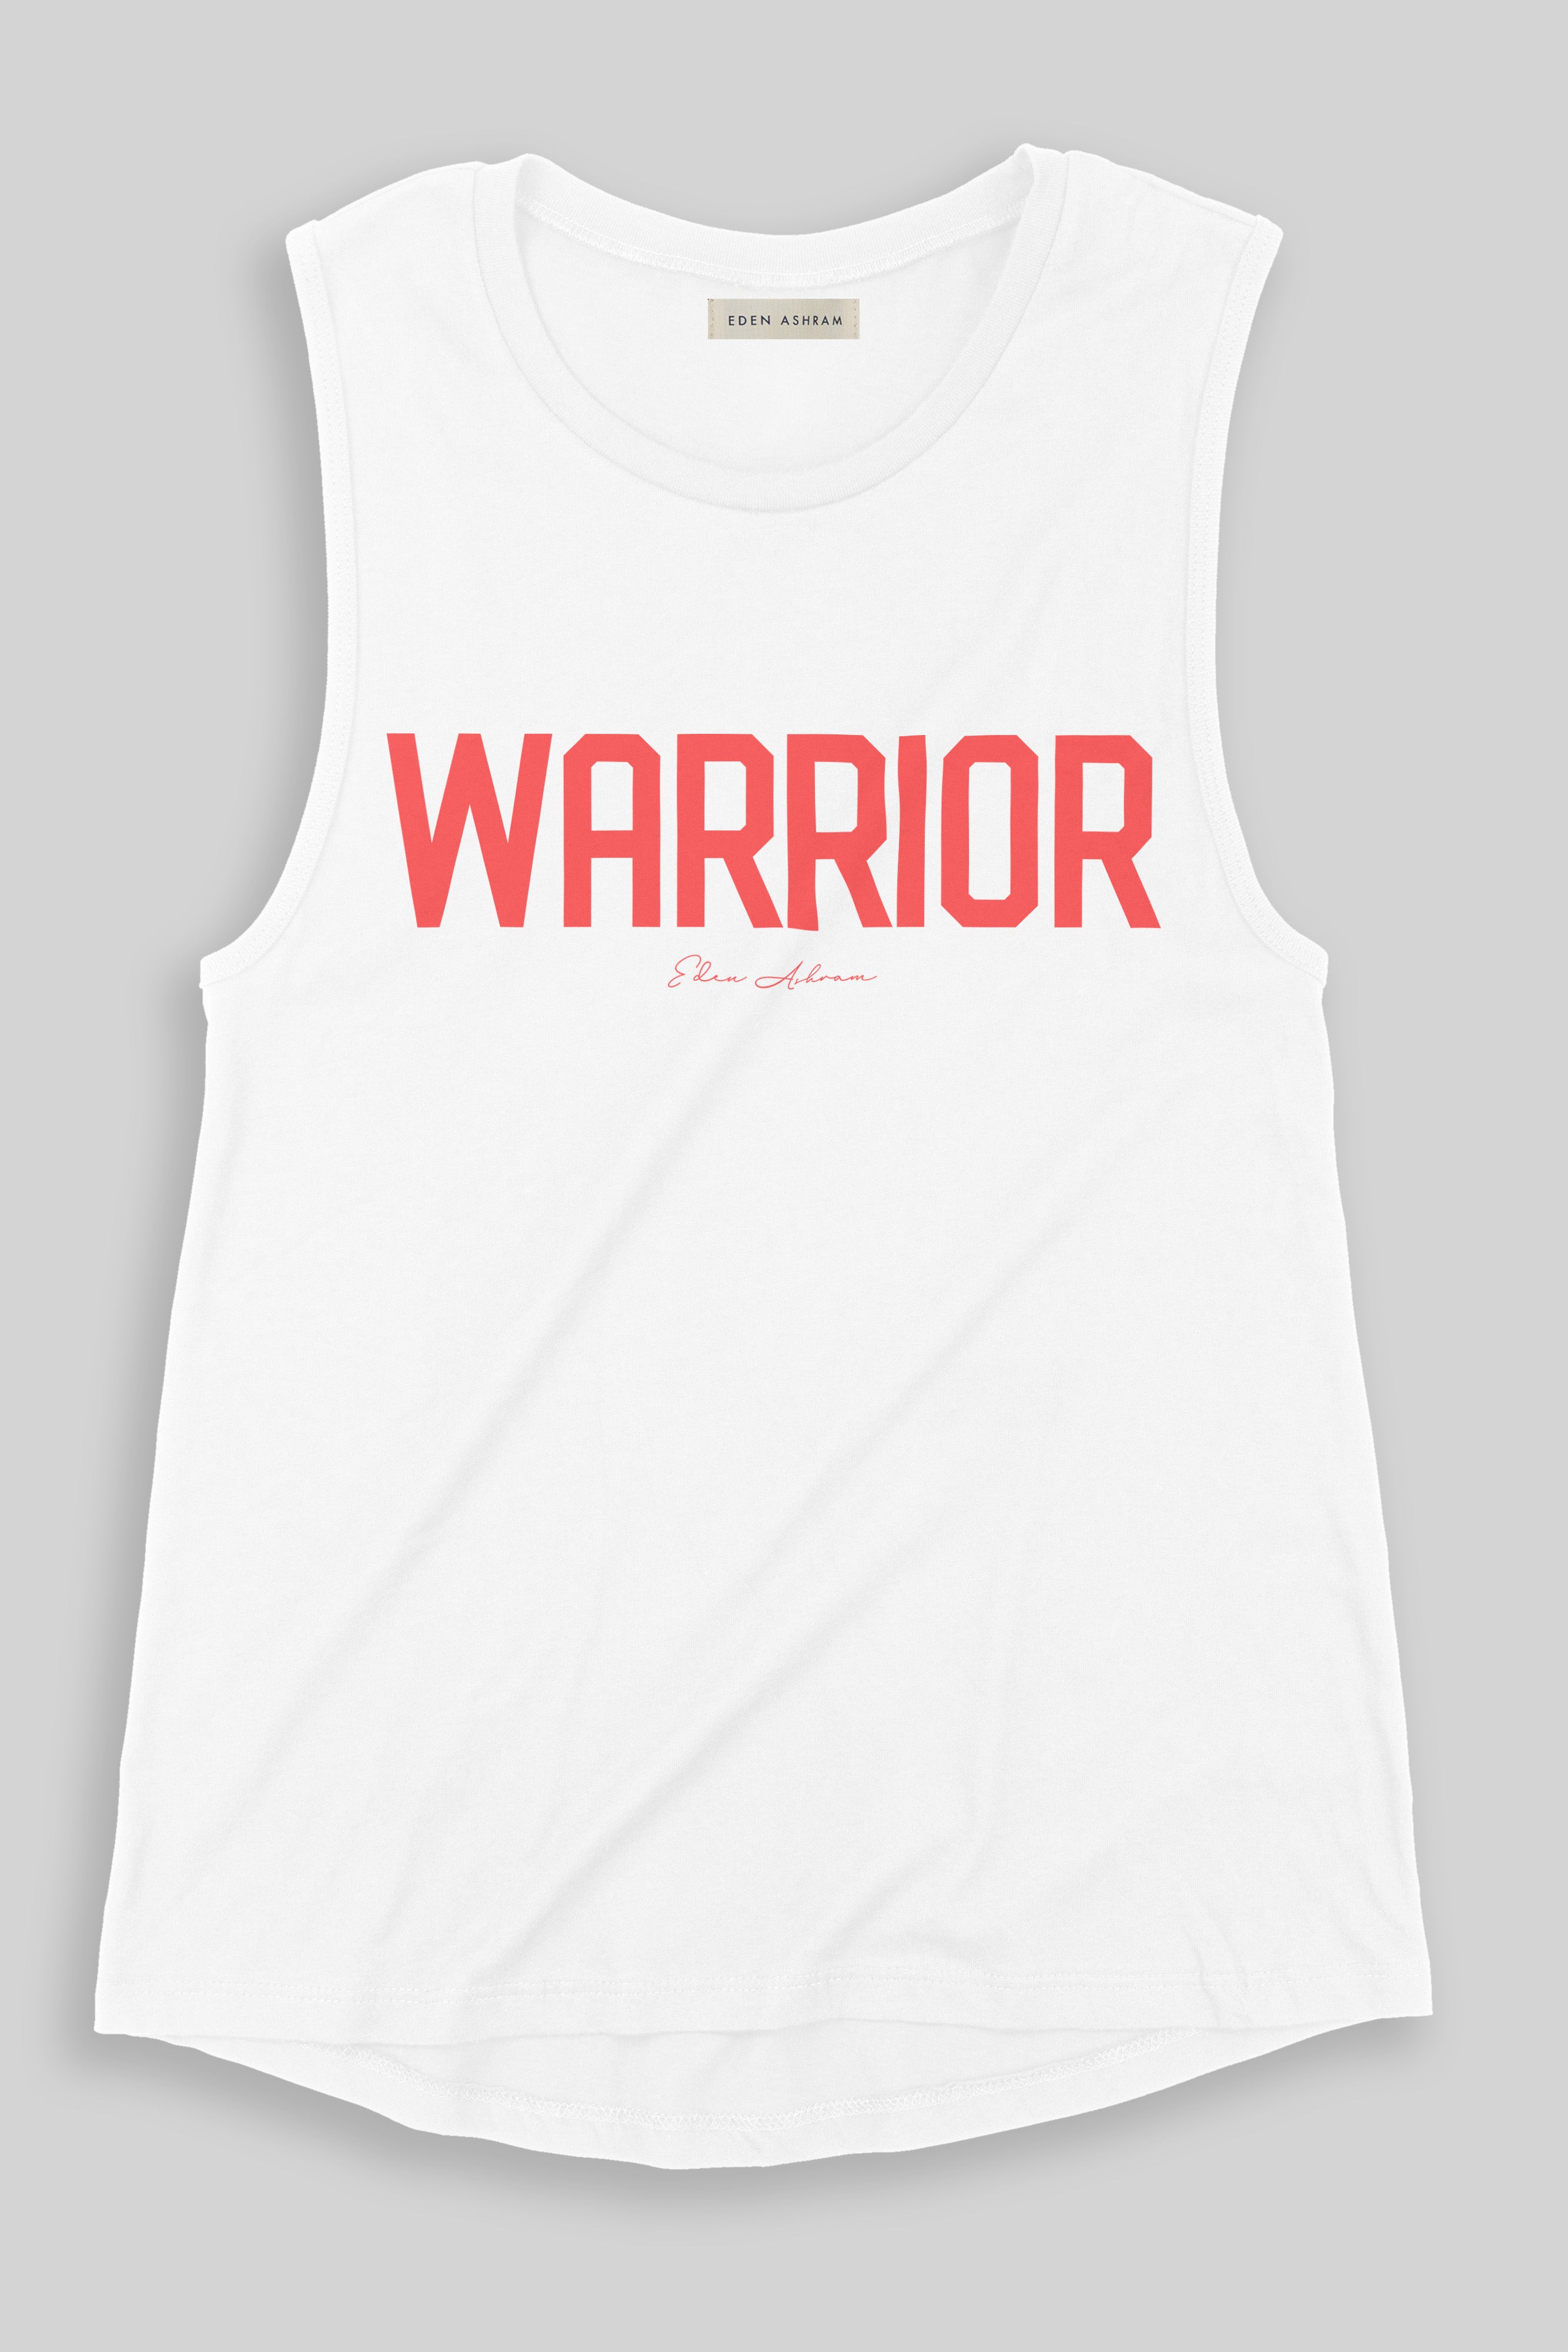 EDEN ASHRAM Warrior Jersey Muscle Tank White